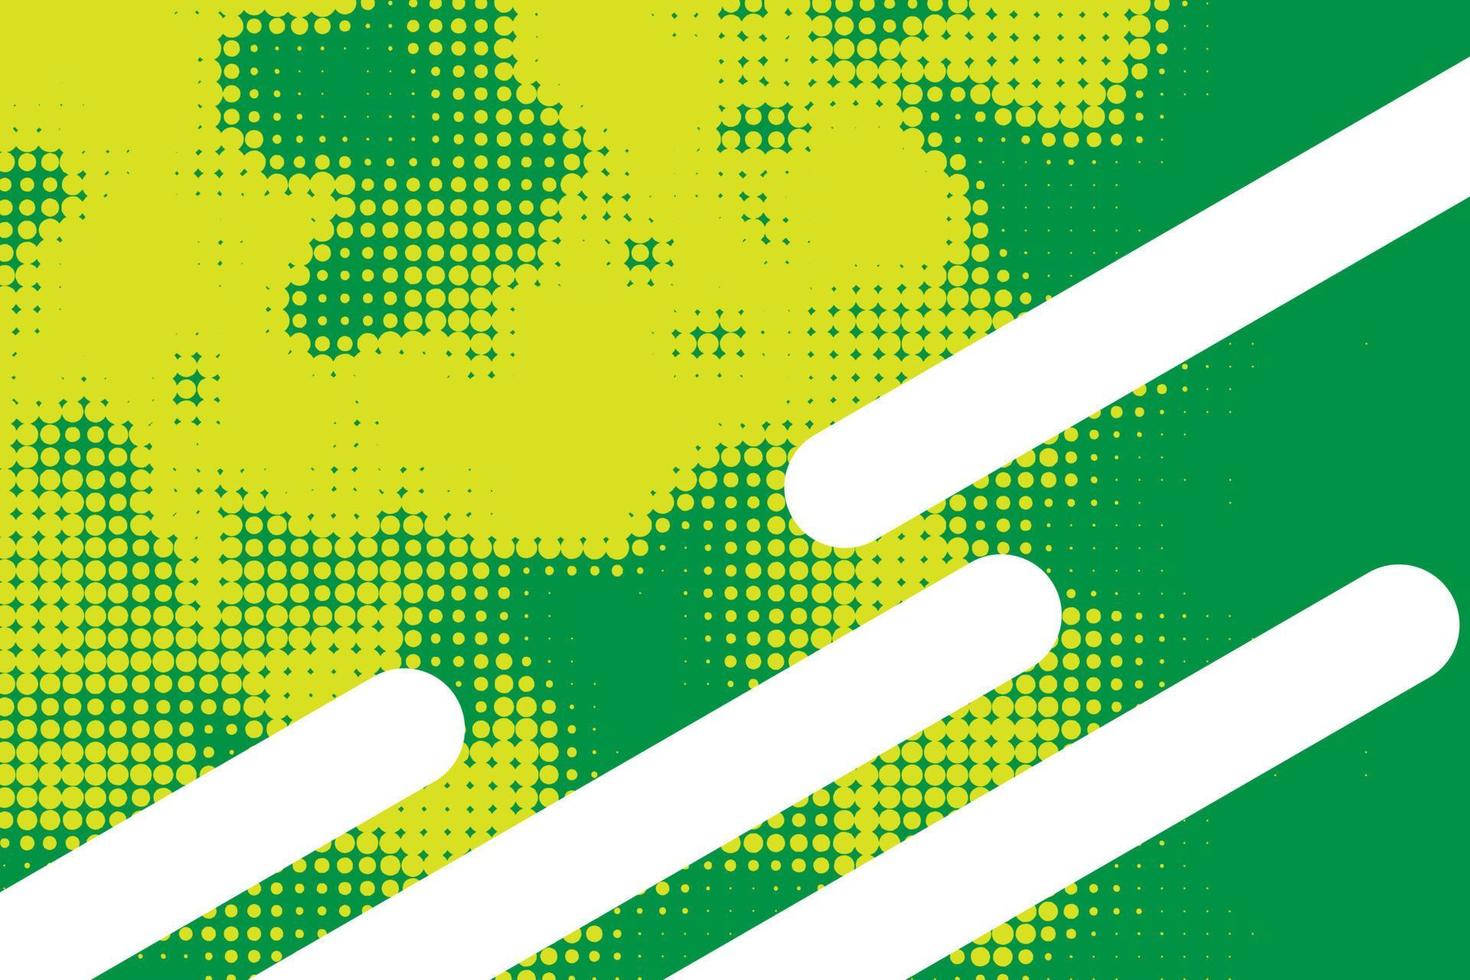 abstrato meio-tom aleatório padrão pontilhado verde e amarelo, ponto, círculos. textura de arte moderna vetorial para cartazes, cartões de visita, capa, maquete de rótulos, layout de adesivos vetor